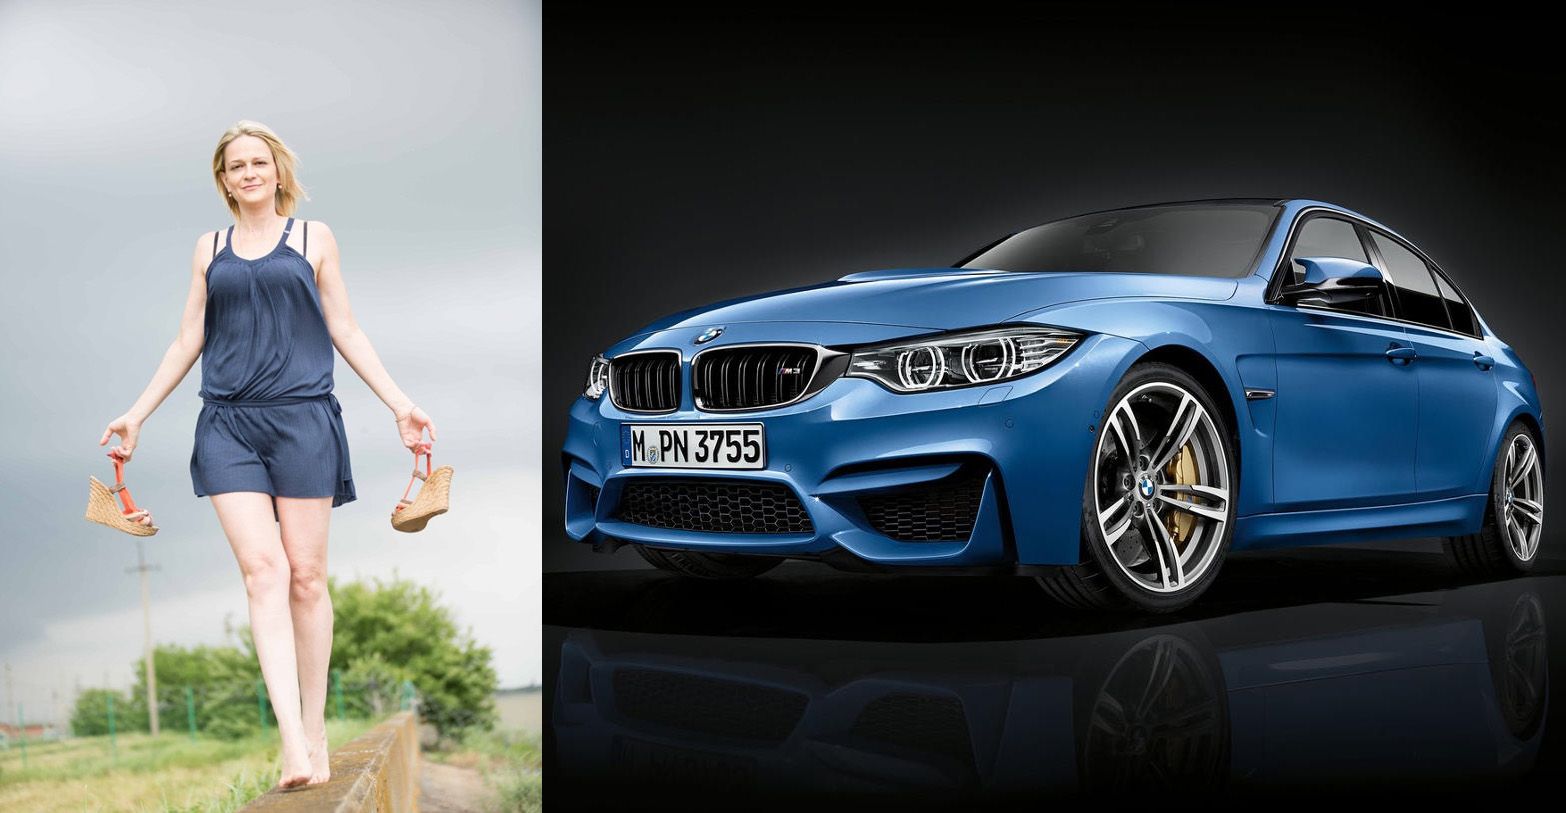 BMW M3 Седан: спортивный и мощный кар. Мощность 431 л.с. обеспечивает высокую производительность во всем диапазоне оборотов. 